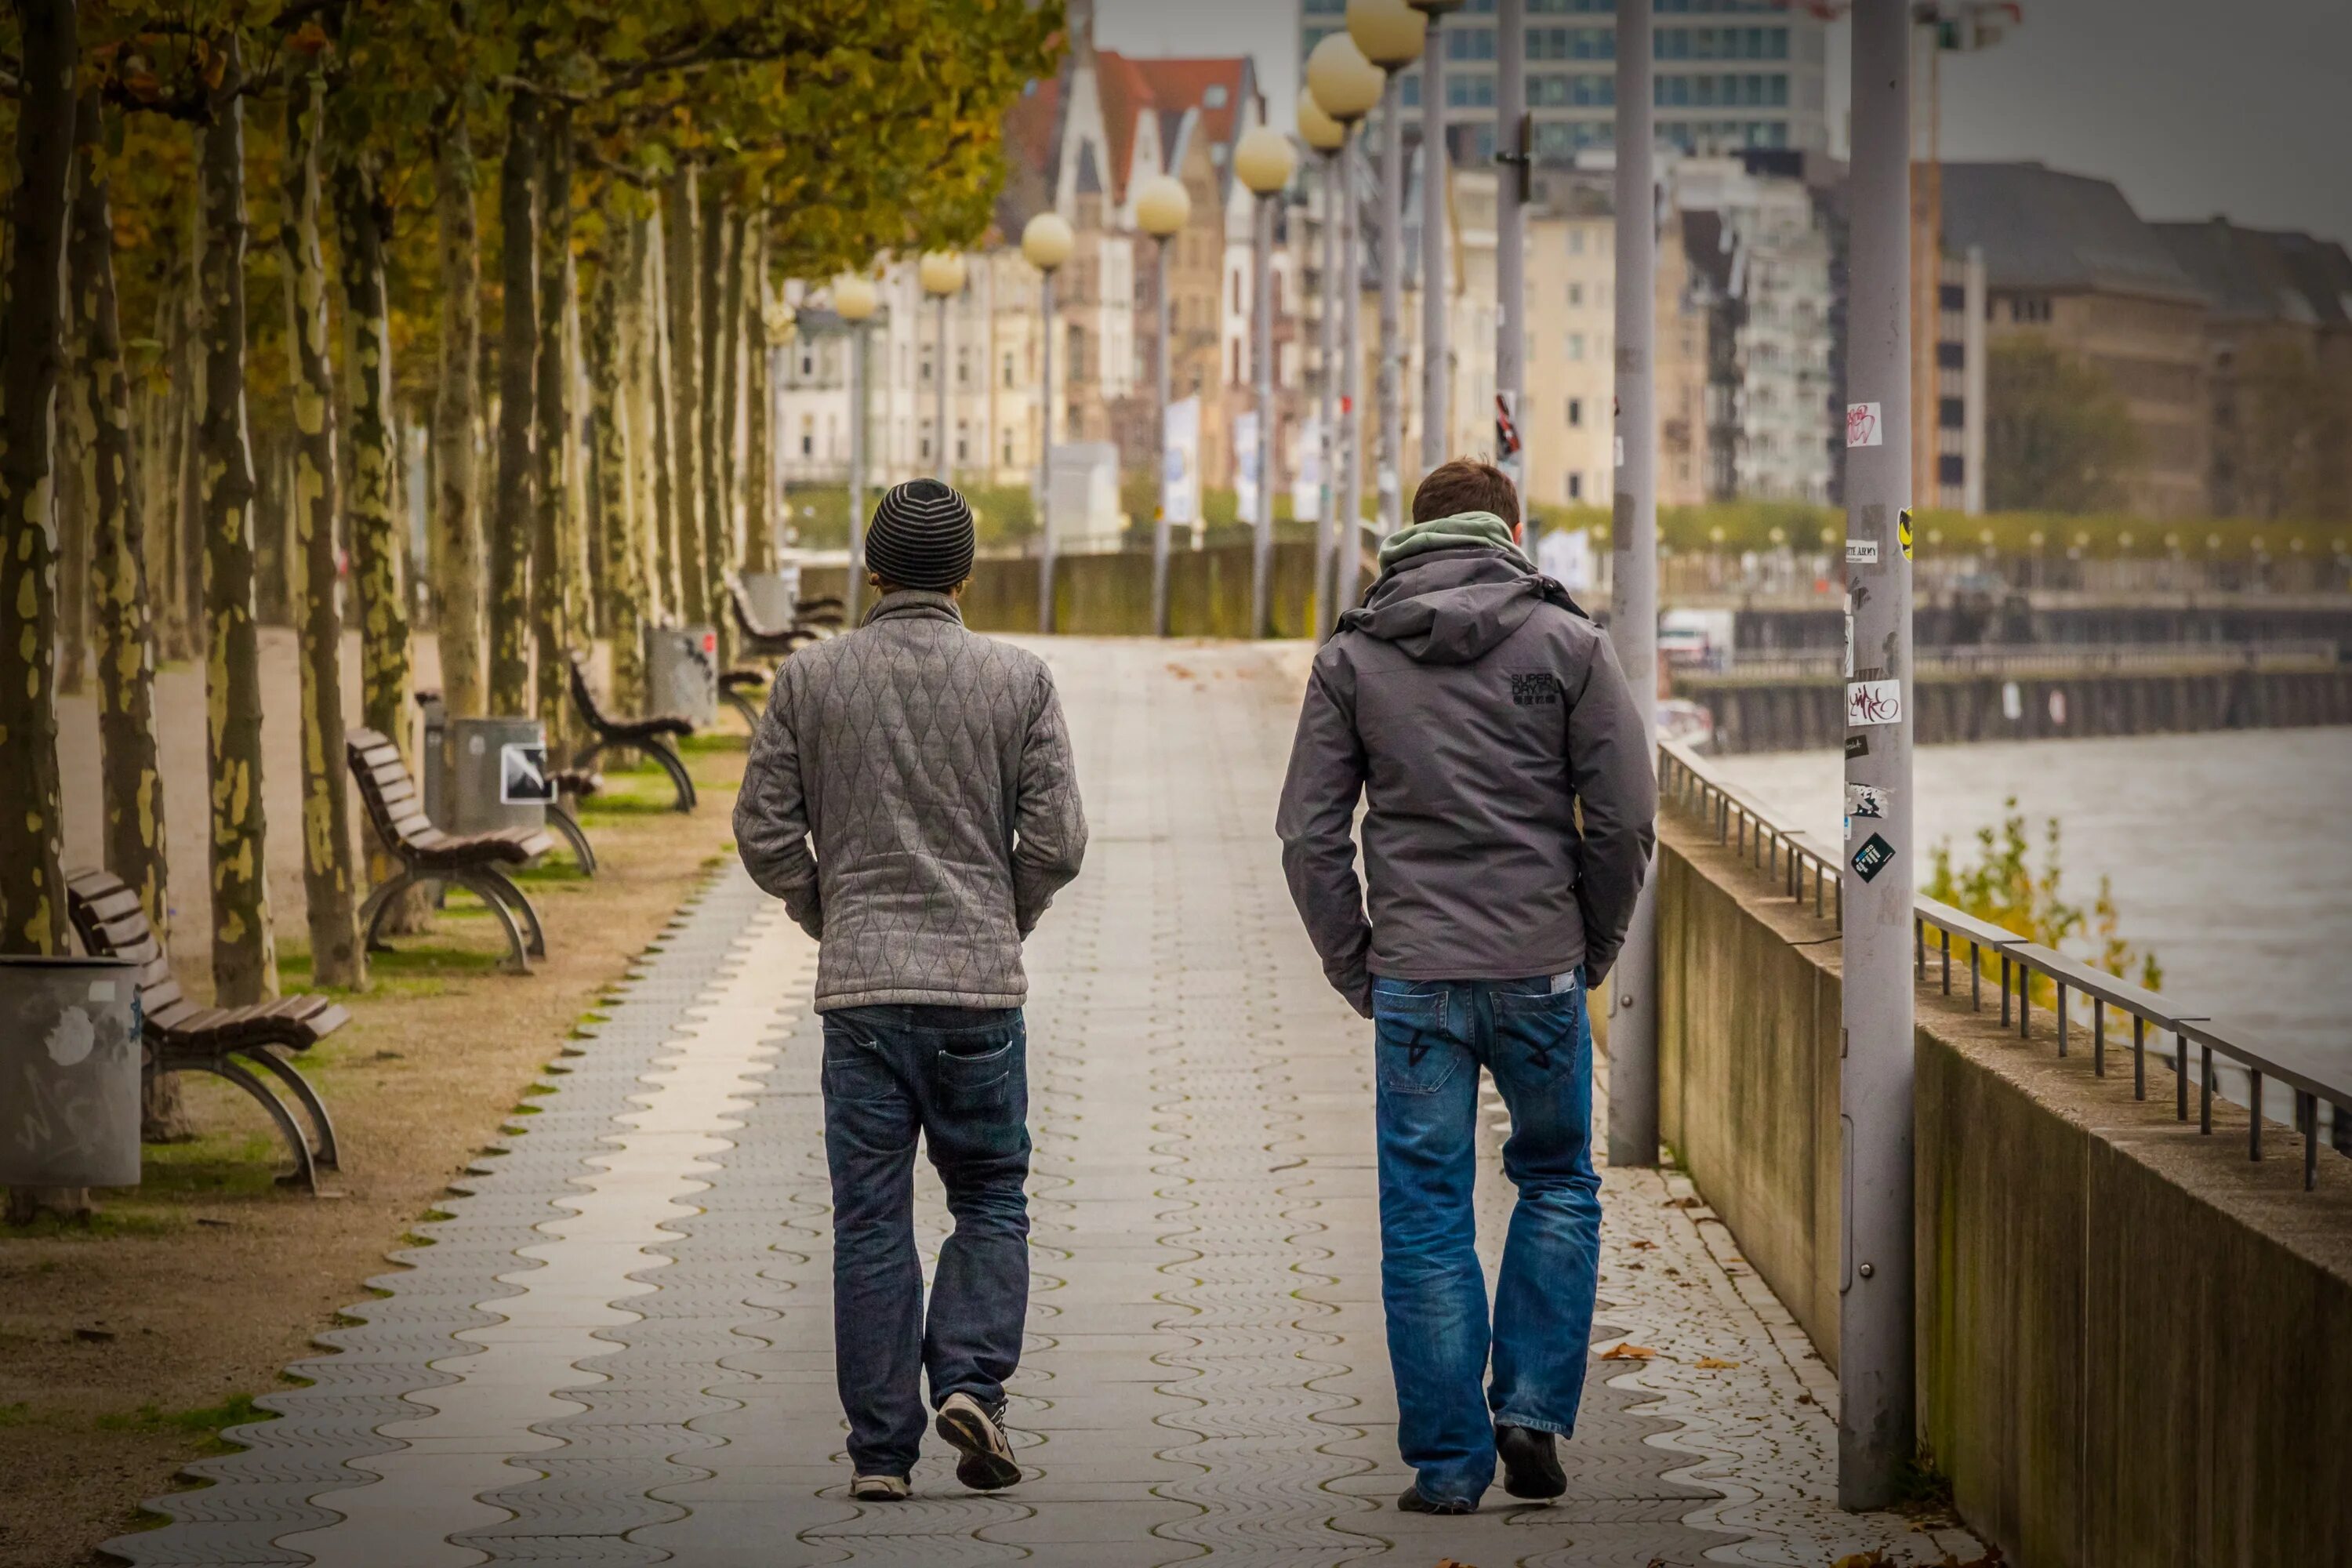 Гулять по улице. Друзья на прогулке. Два парня со спины. Прогулка по городу фото.